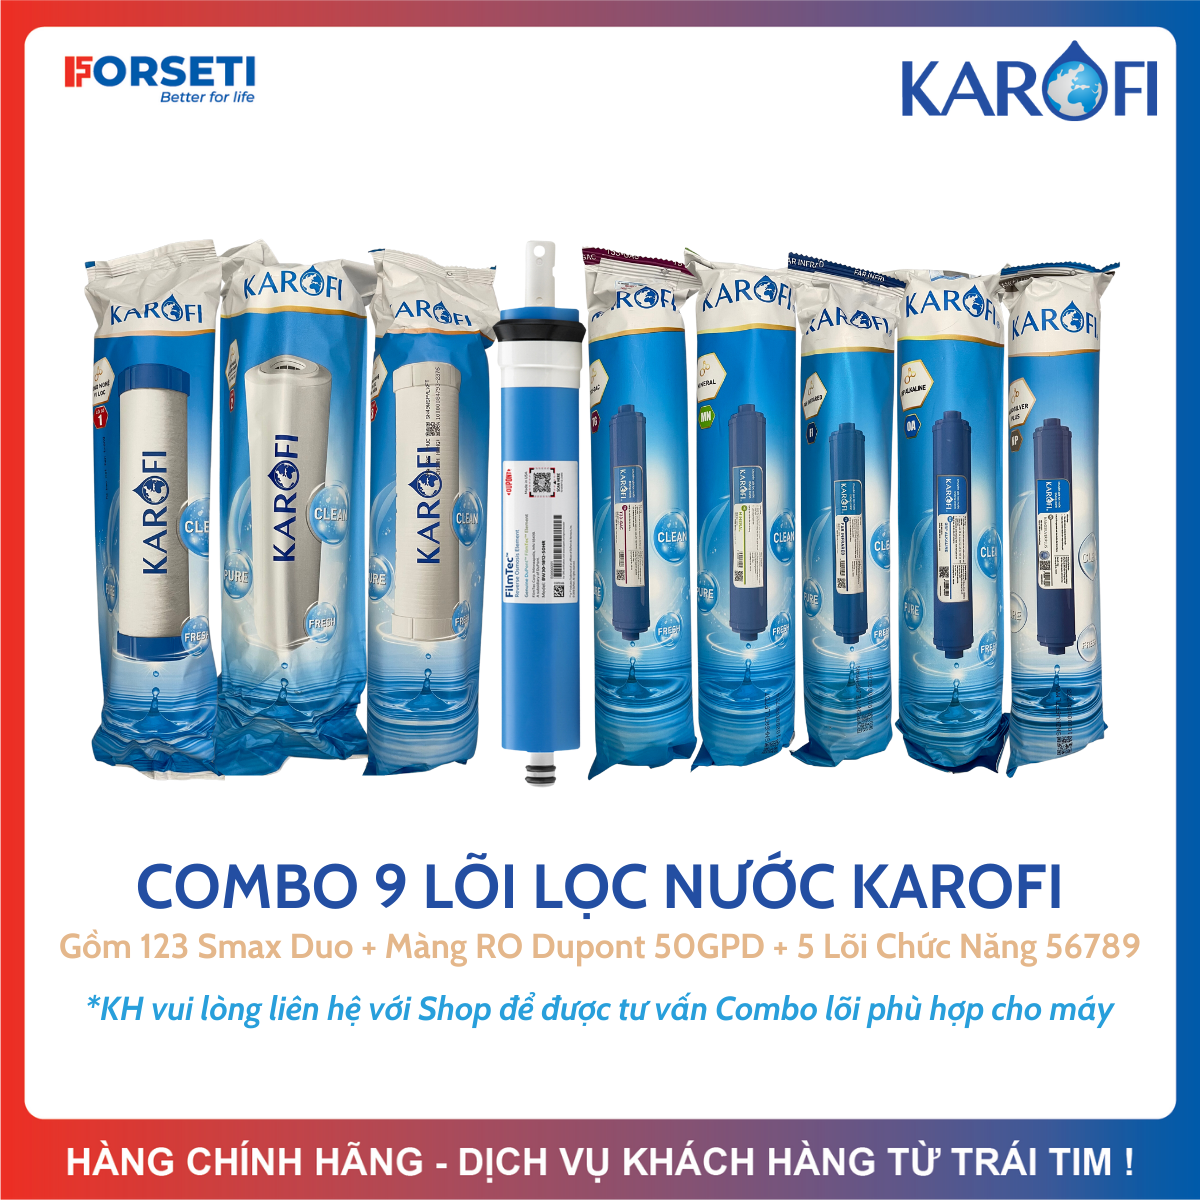 Combo 9 lõi lọc nước Karofi chính hãng dùng cho máy lọc nước Karofi (123 + RO50 + 56789)